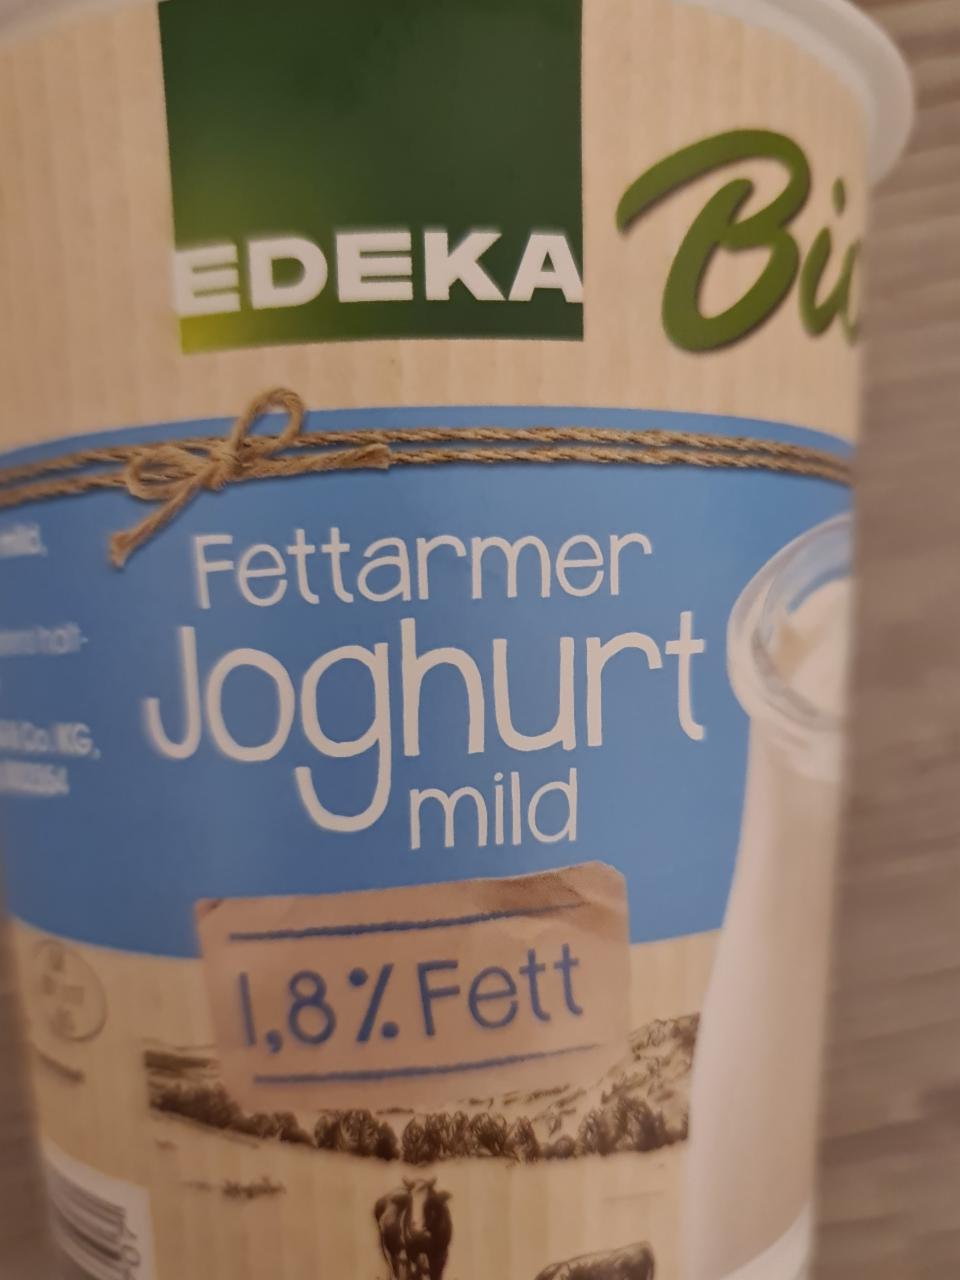 Fotografie - Fettarmer Joghurt mild 1,8% fett Edeka Bio